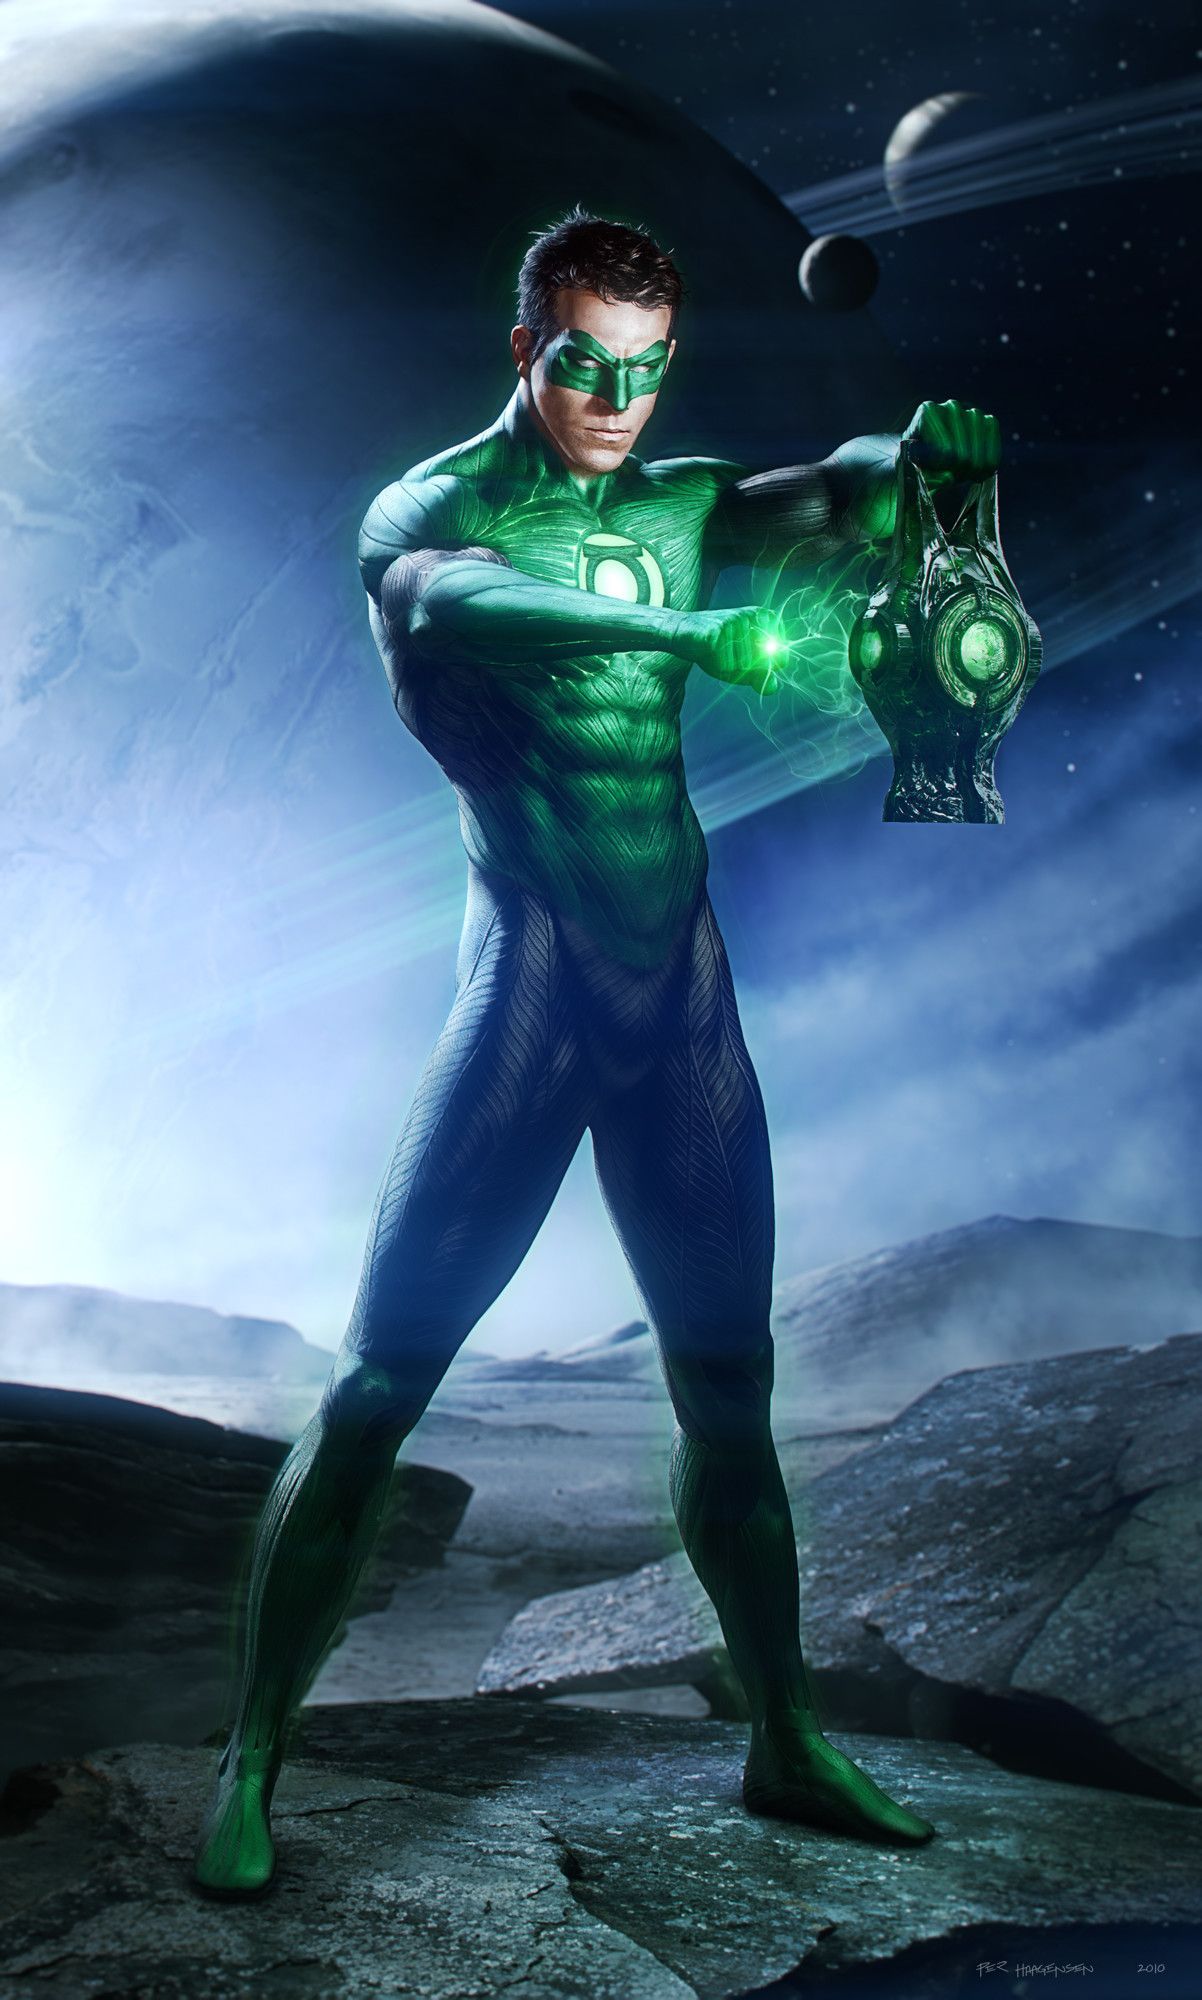 Green Lantern (2011) Artwork Featuring Hal Jordan & Kilowog. Green lantern movie, Green lantern, Green lantern 2011